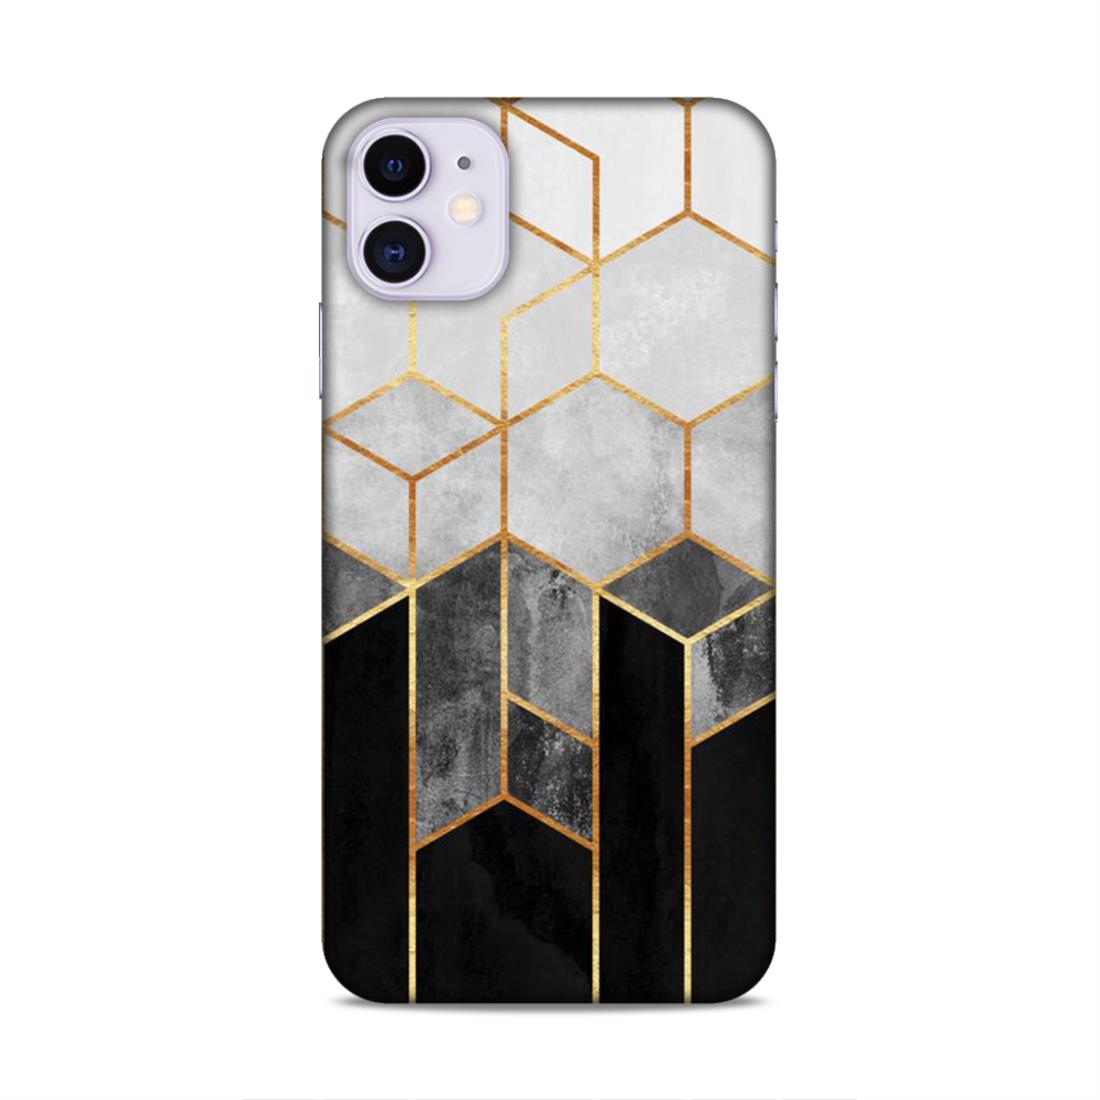 Hexagonal White Black Pattern Hard Back Case For Apple iPhone 11